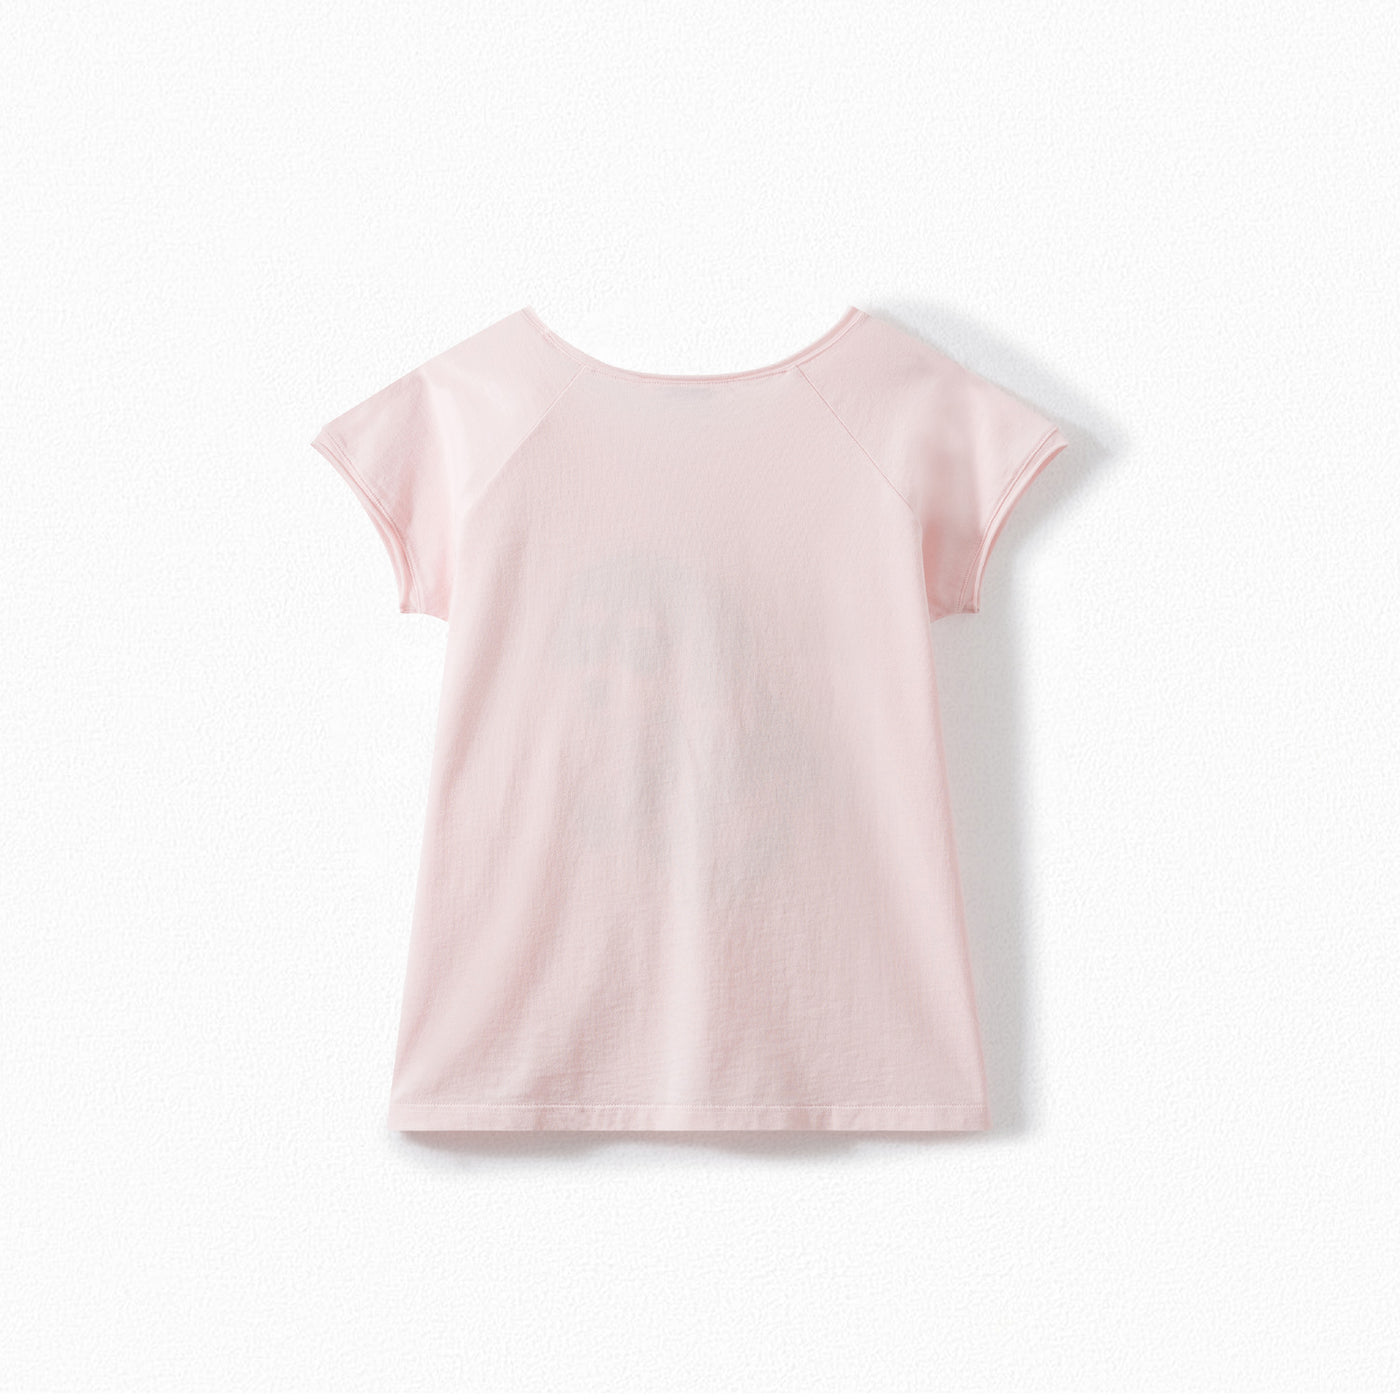 Girls' Soft Jersey T-shirt pink